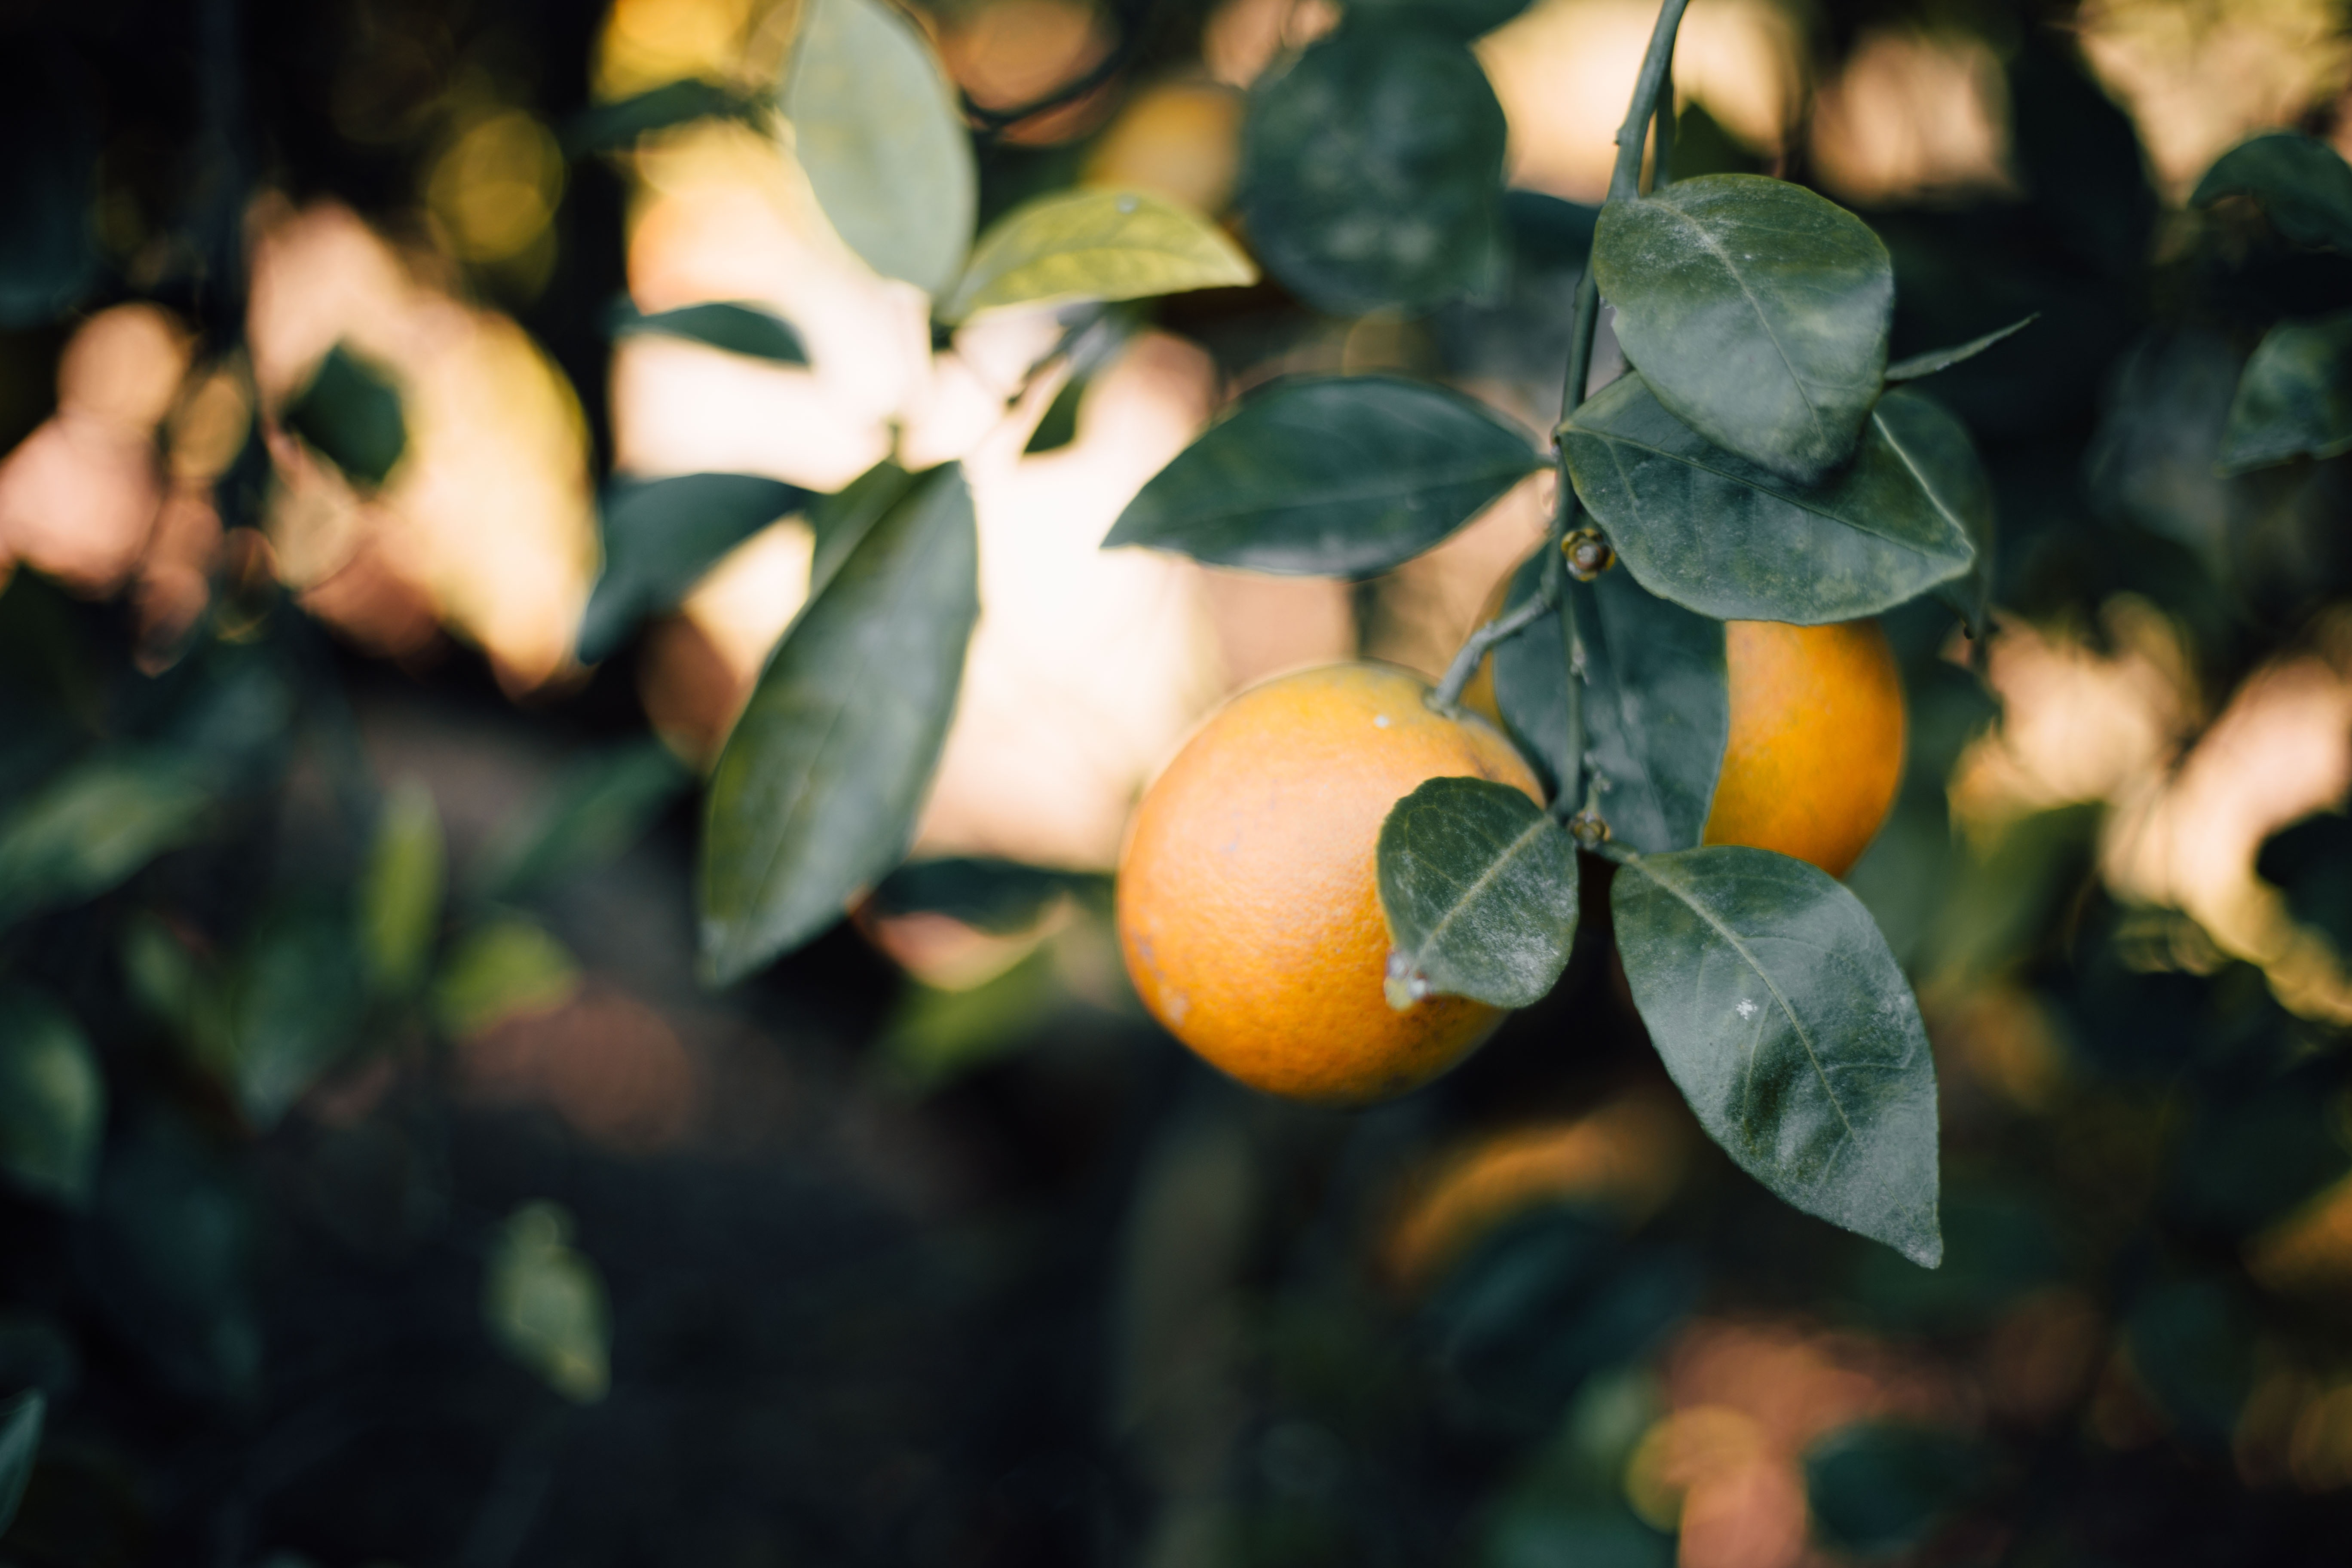 natural citrus still on tree